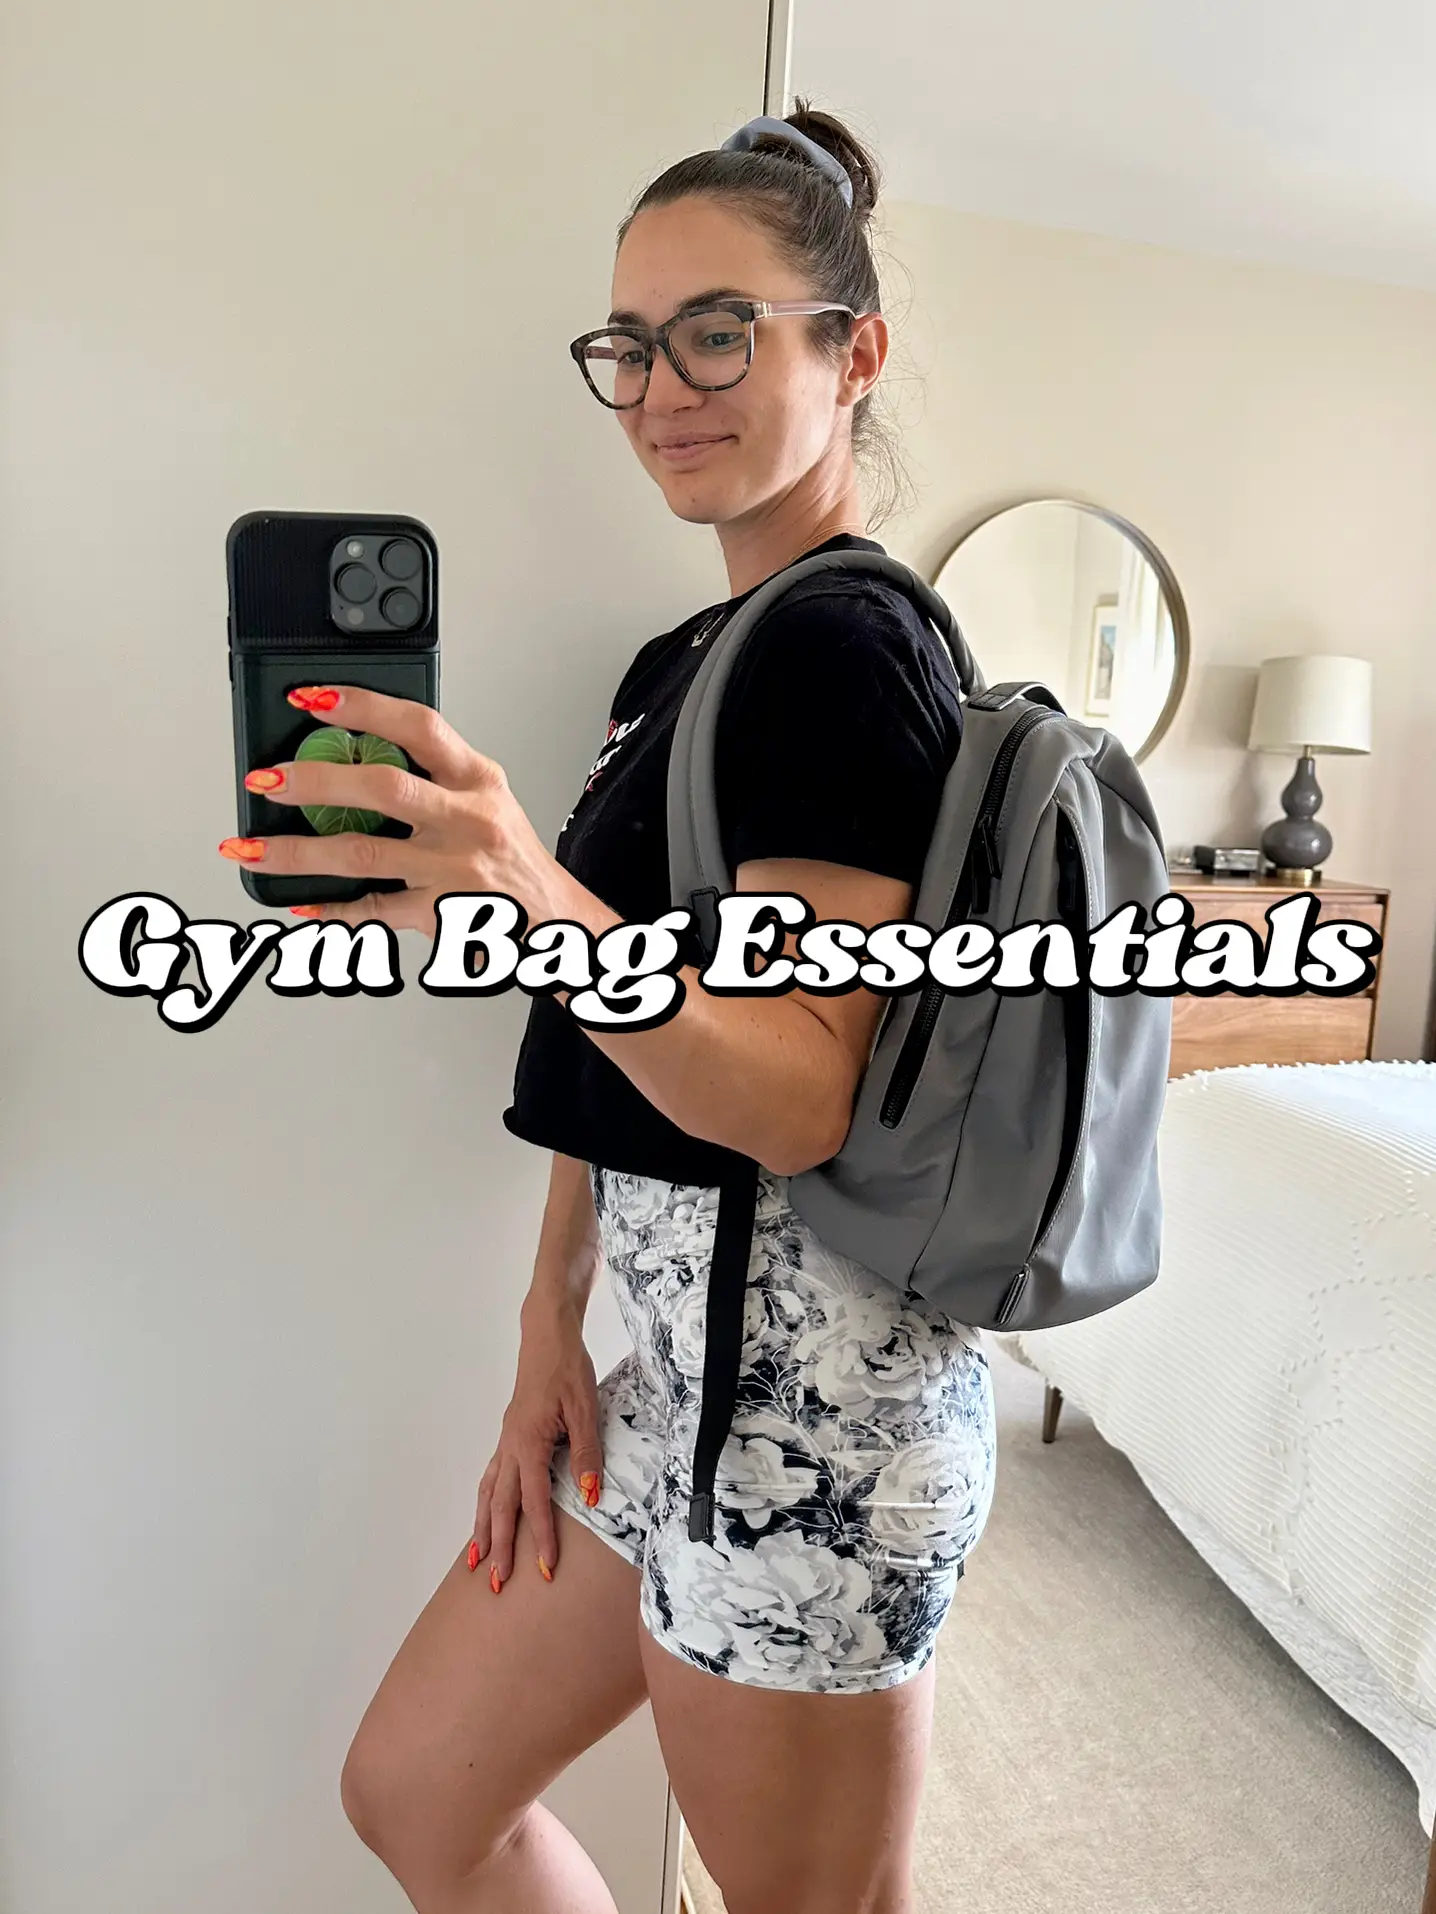 Gym Bag Essentials, Gallery posted by Emma Bonoli